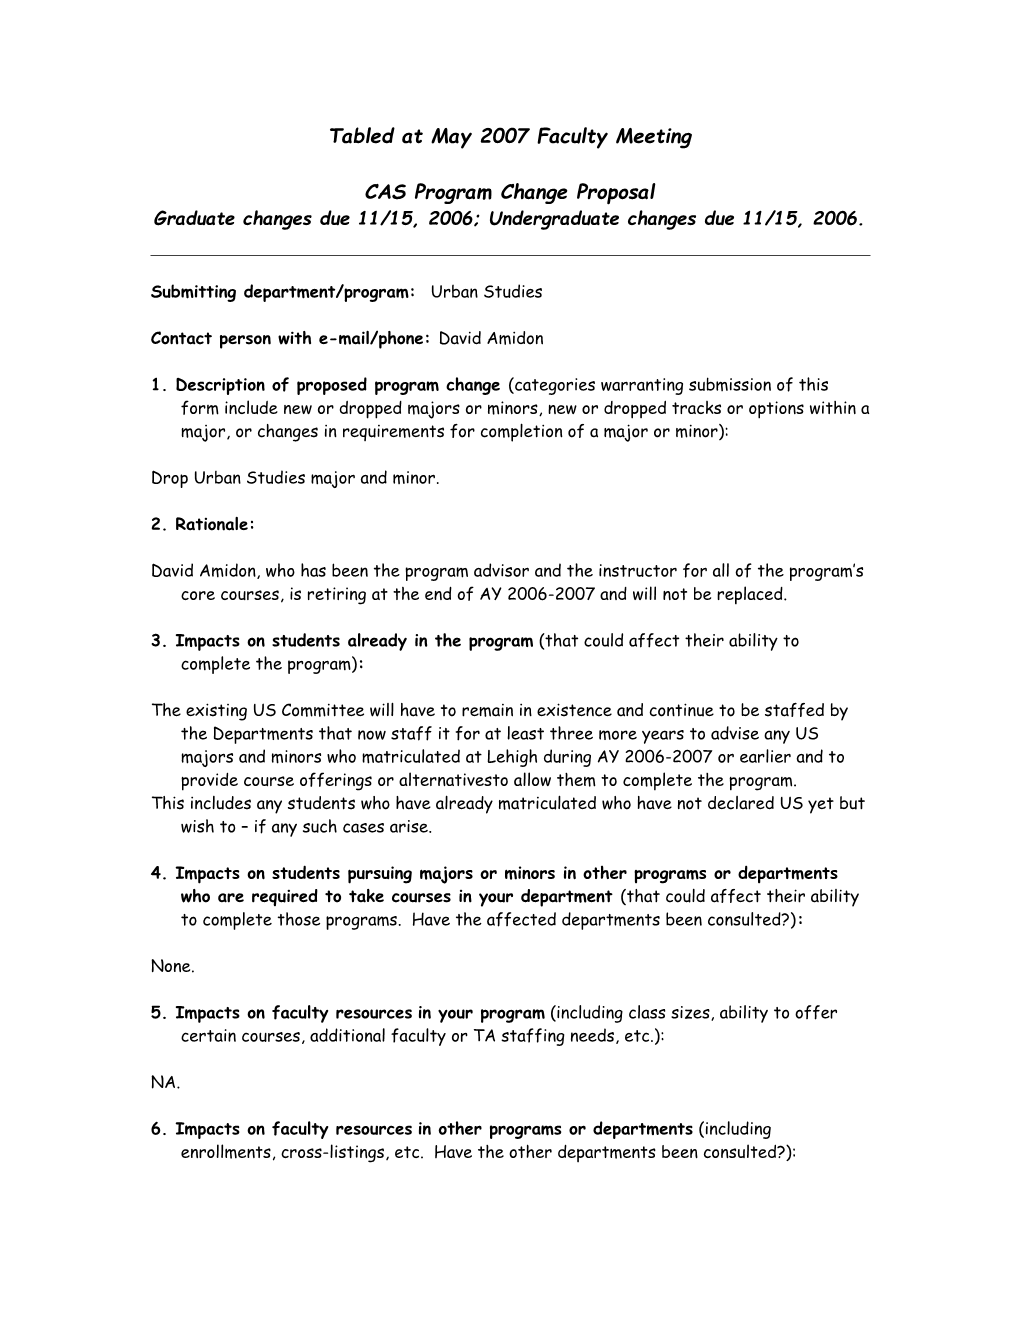 CAS Program Change Proposal